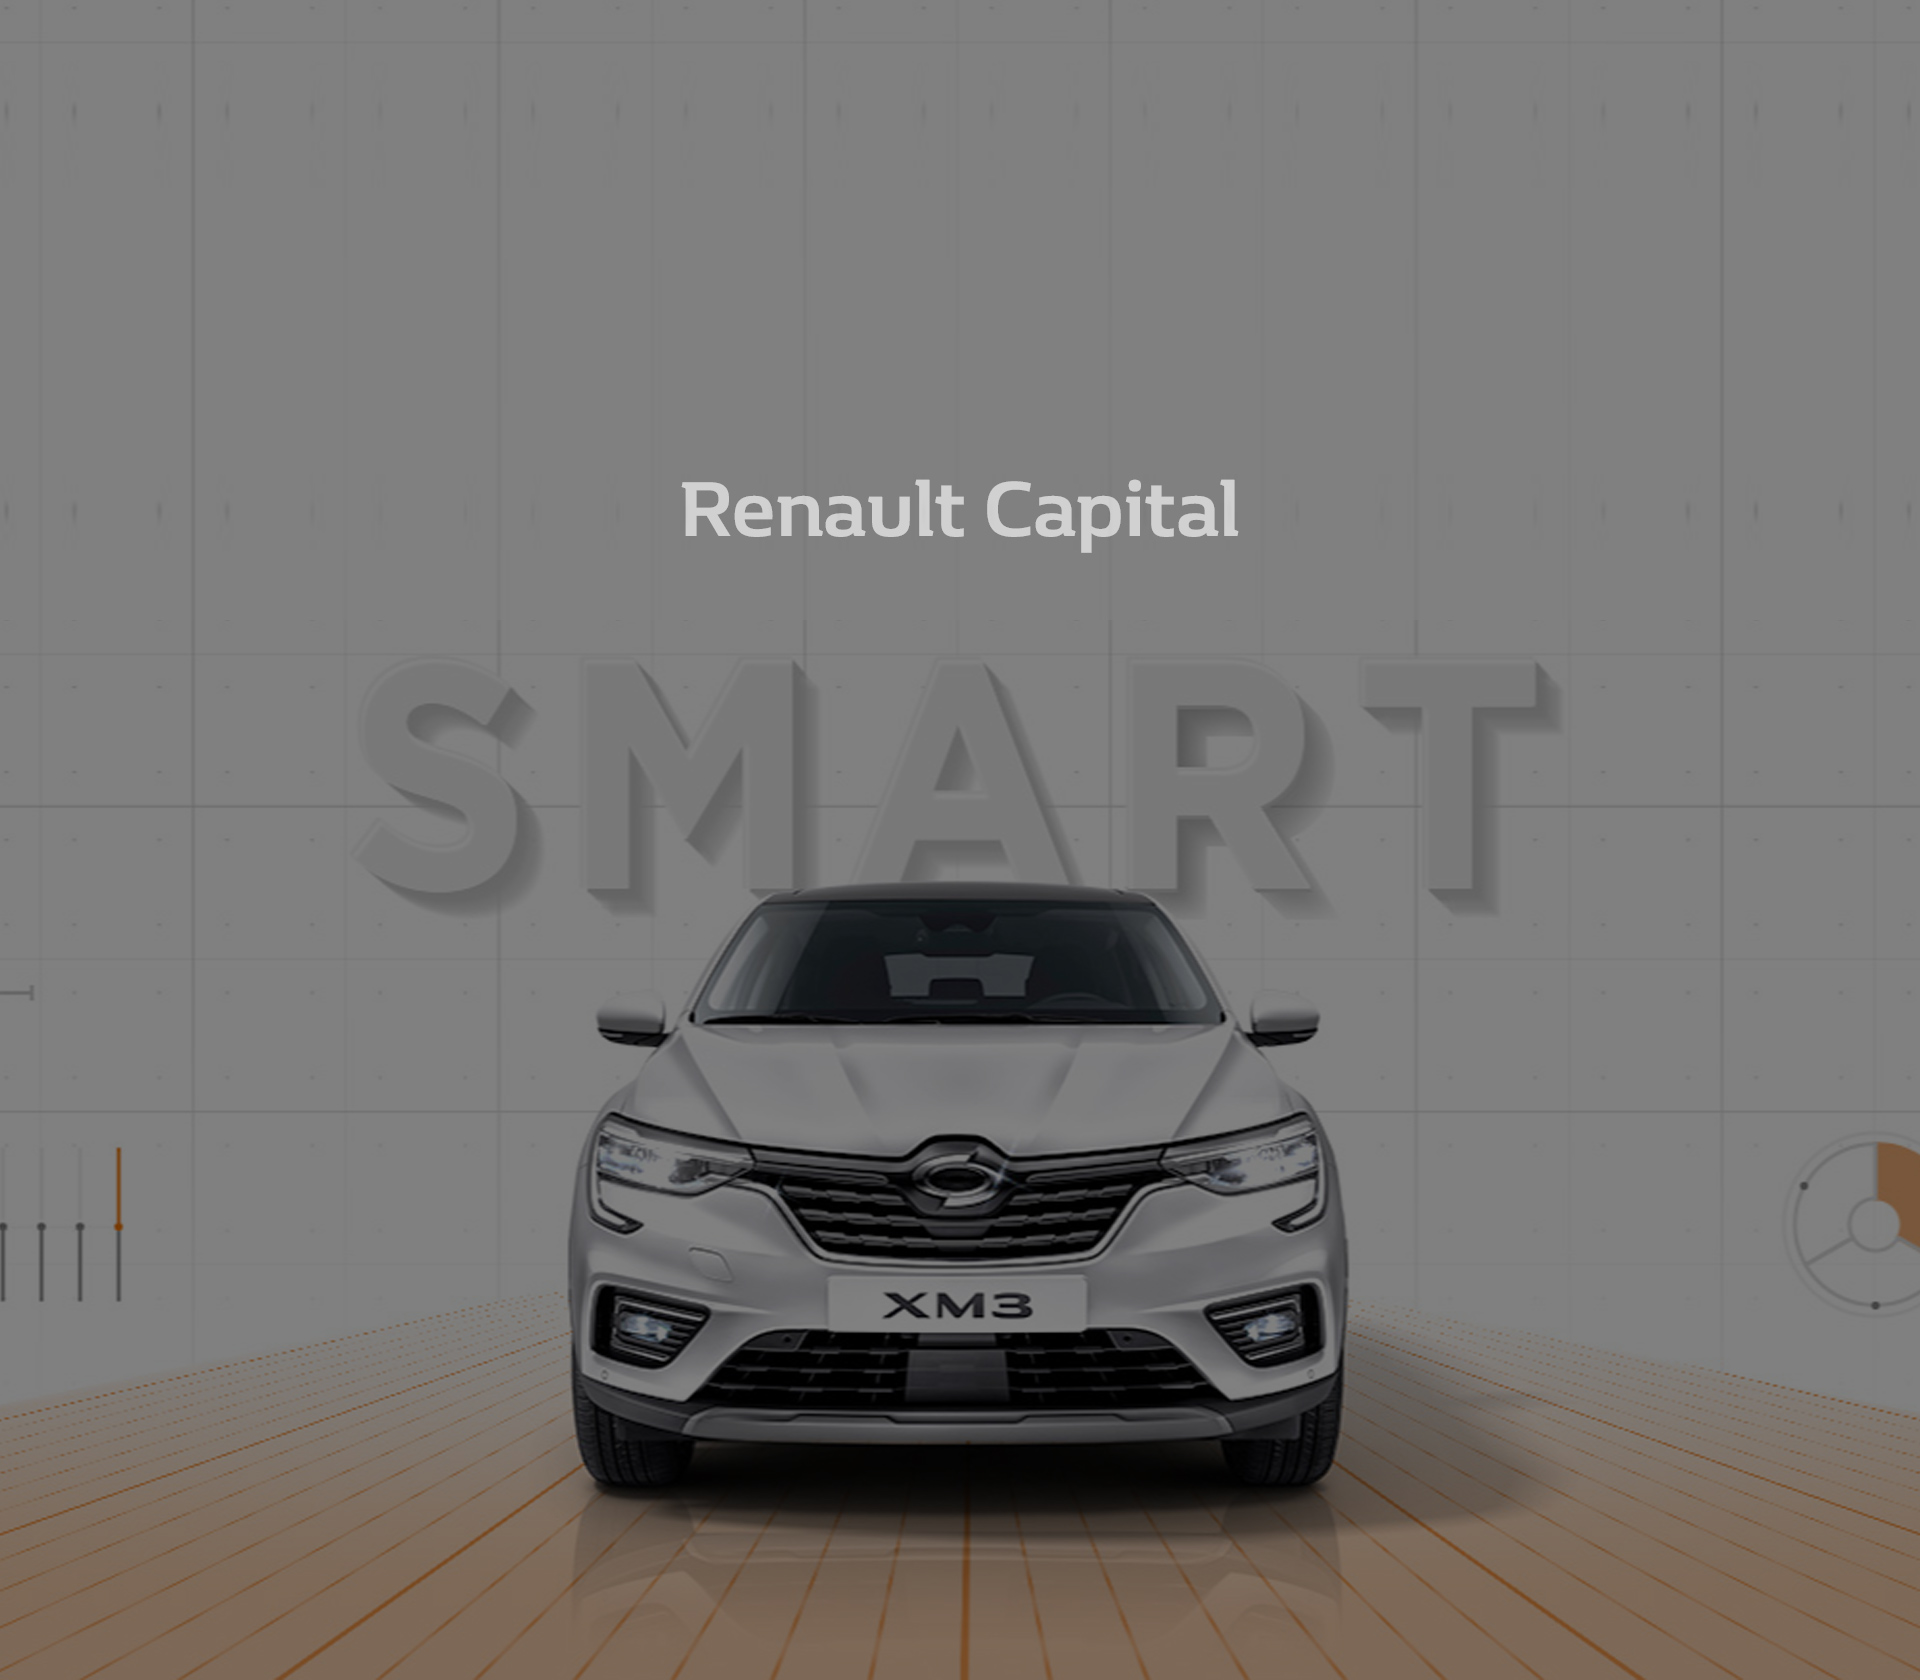 Renault Capital Microsite